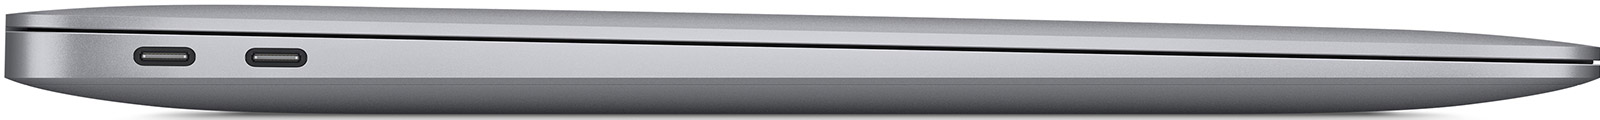 MacBook-Air-13-3-M1-8-Core-8-GB-1-TB-7-Core-Grafik-CH-Space-Grau-05.jpg